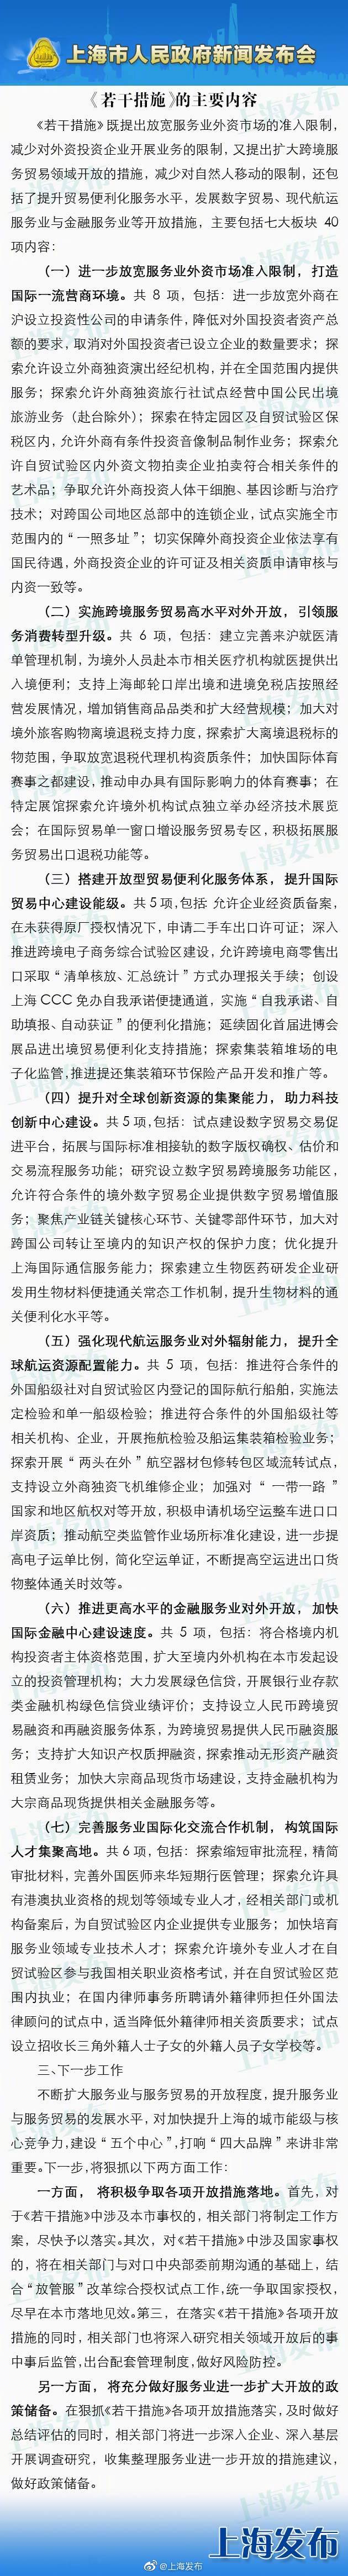 上海推新一轮服务业扩大开放措施 进一步放宽外